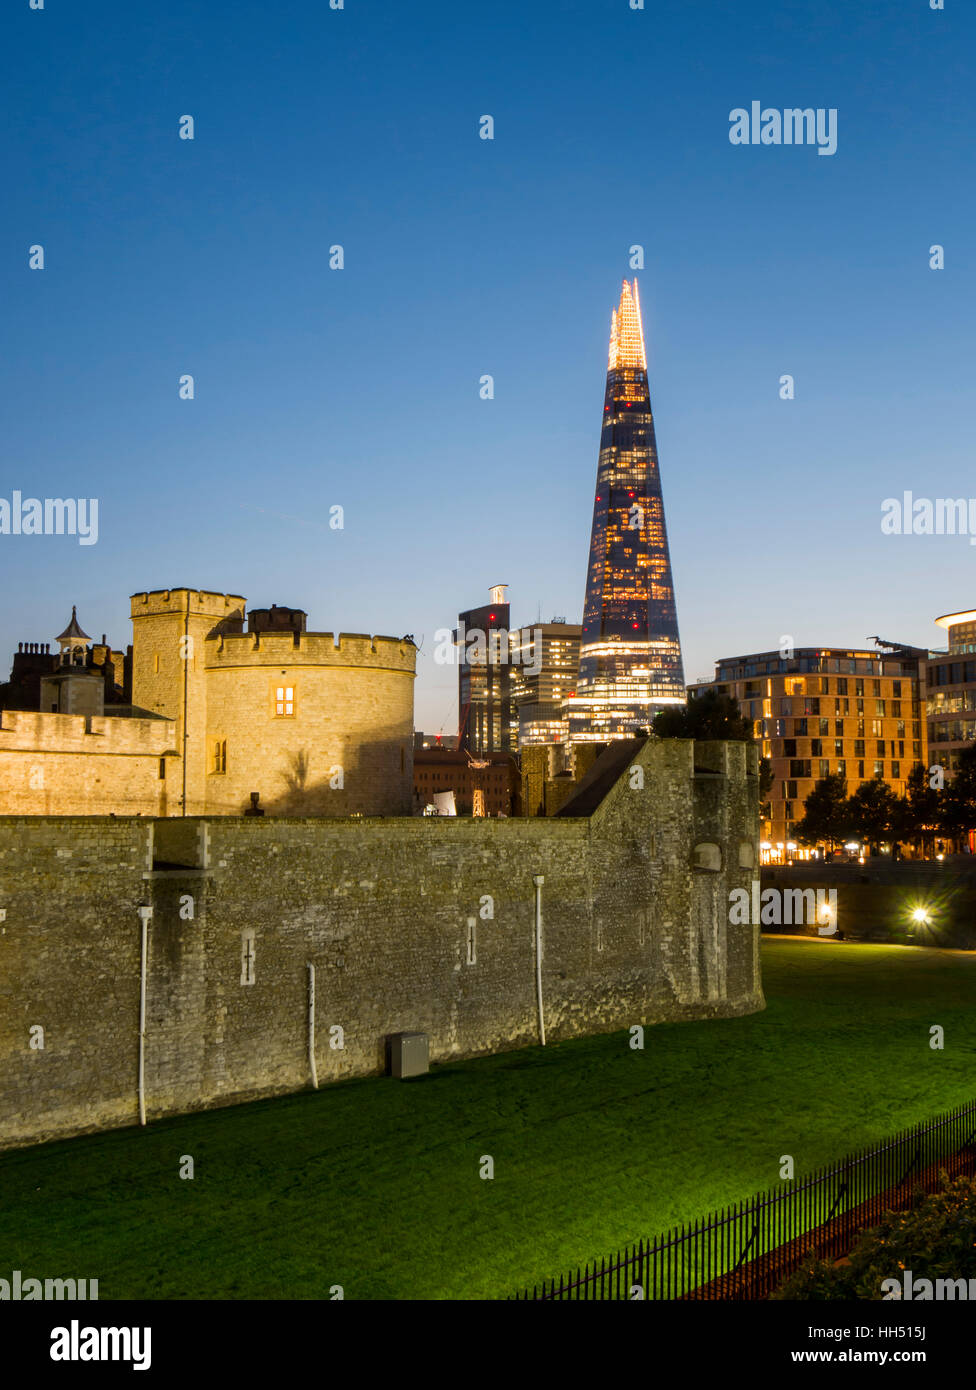 Europe, UK, England, London, Tower of London, Shard dusk Stock Photo